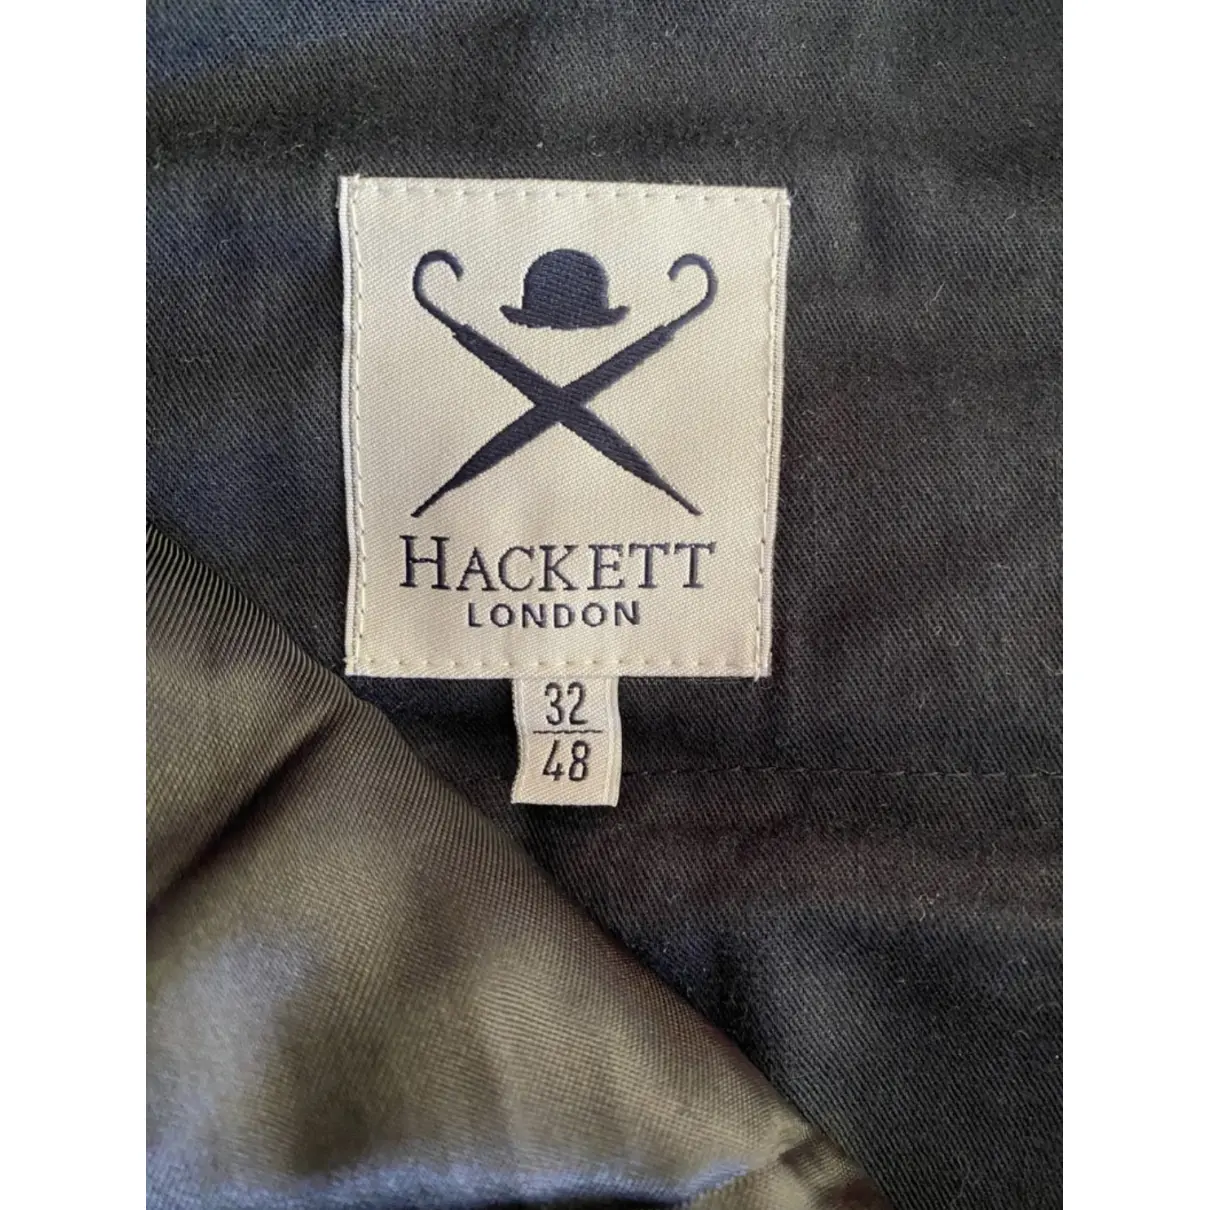 Buy Hackett London Wool suit online